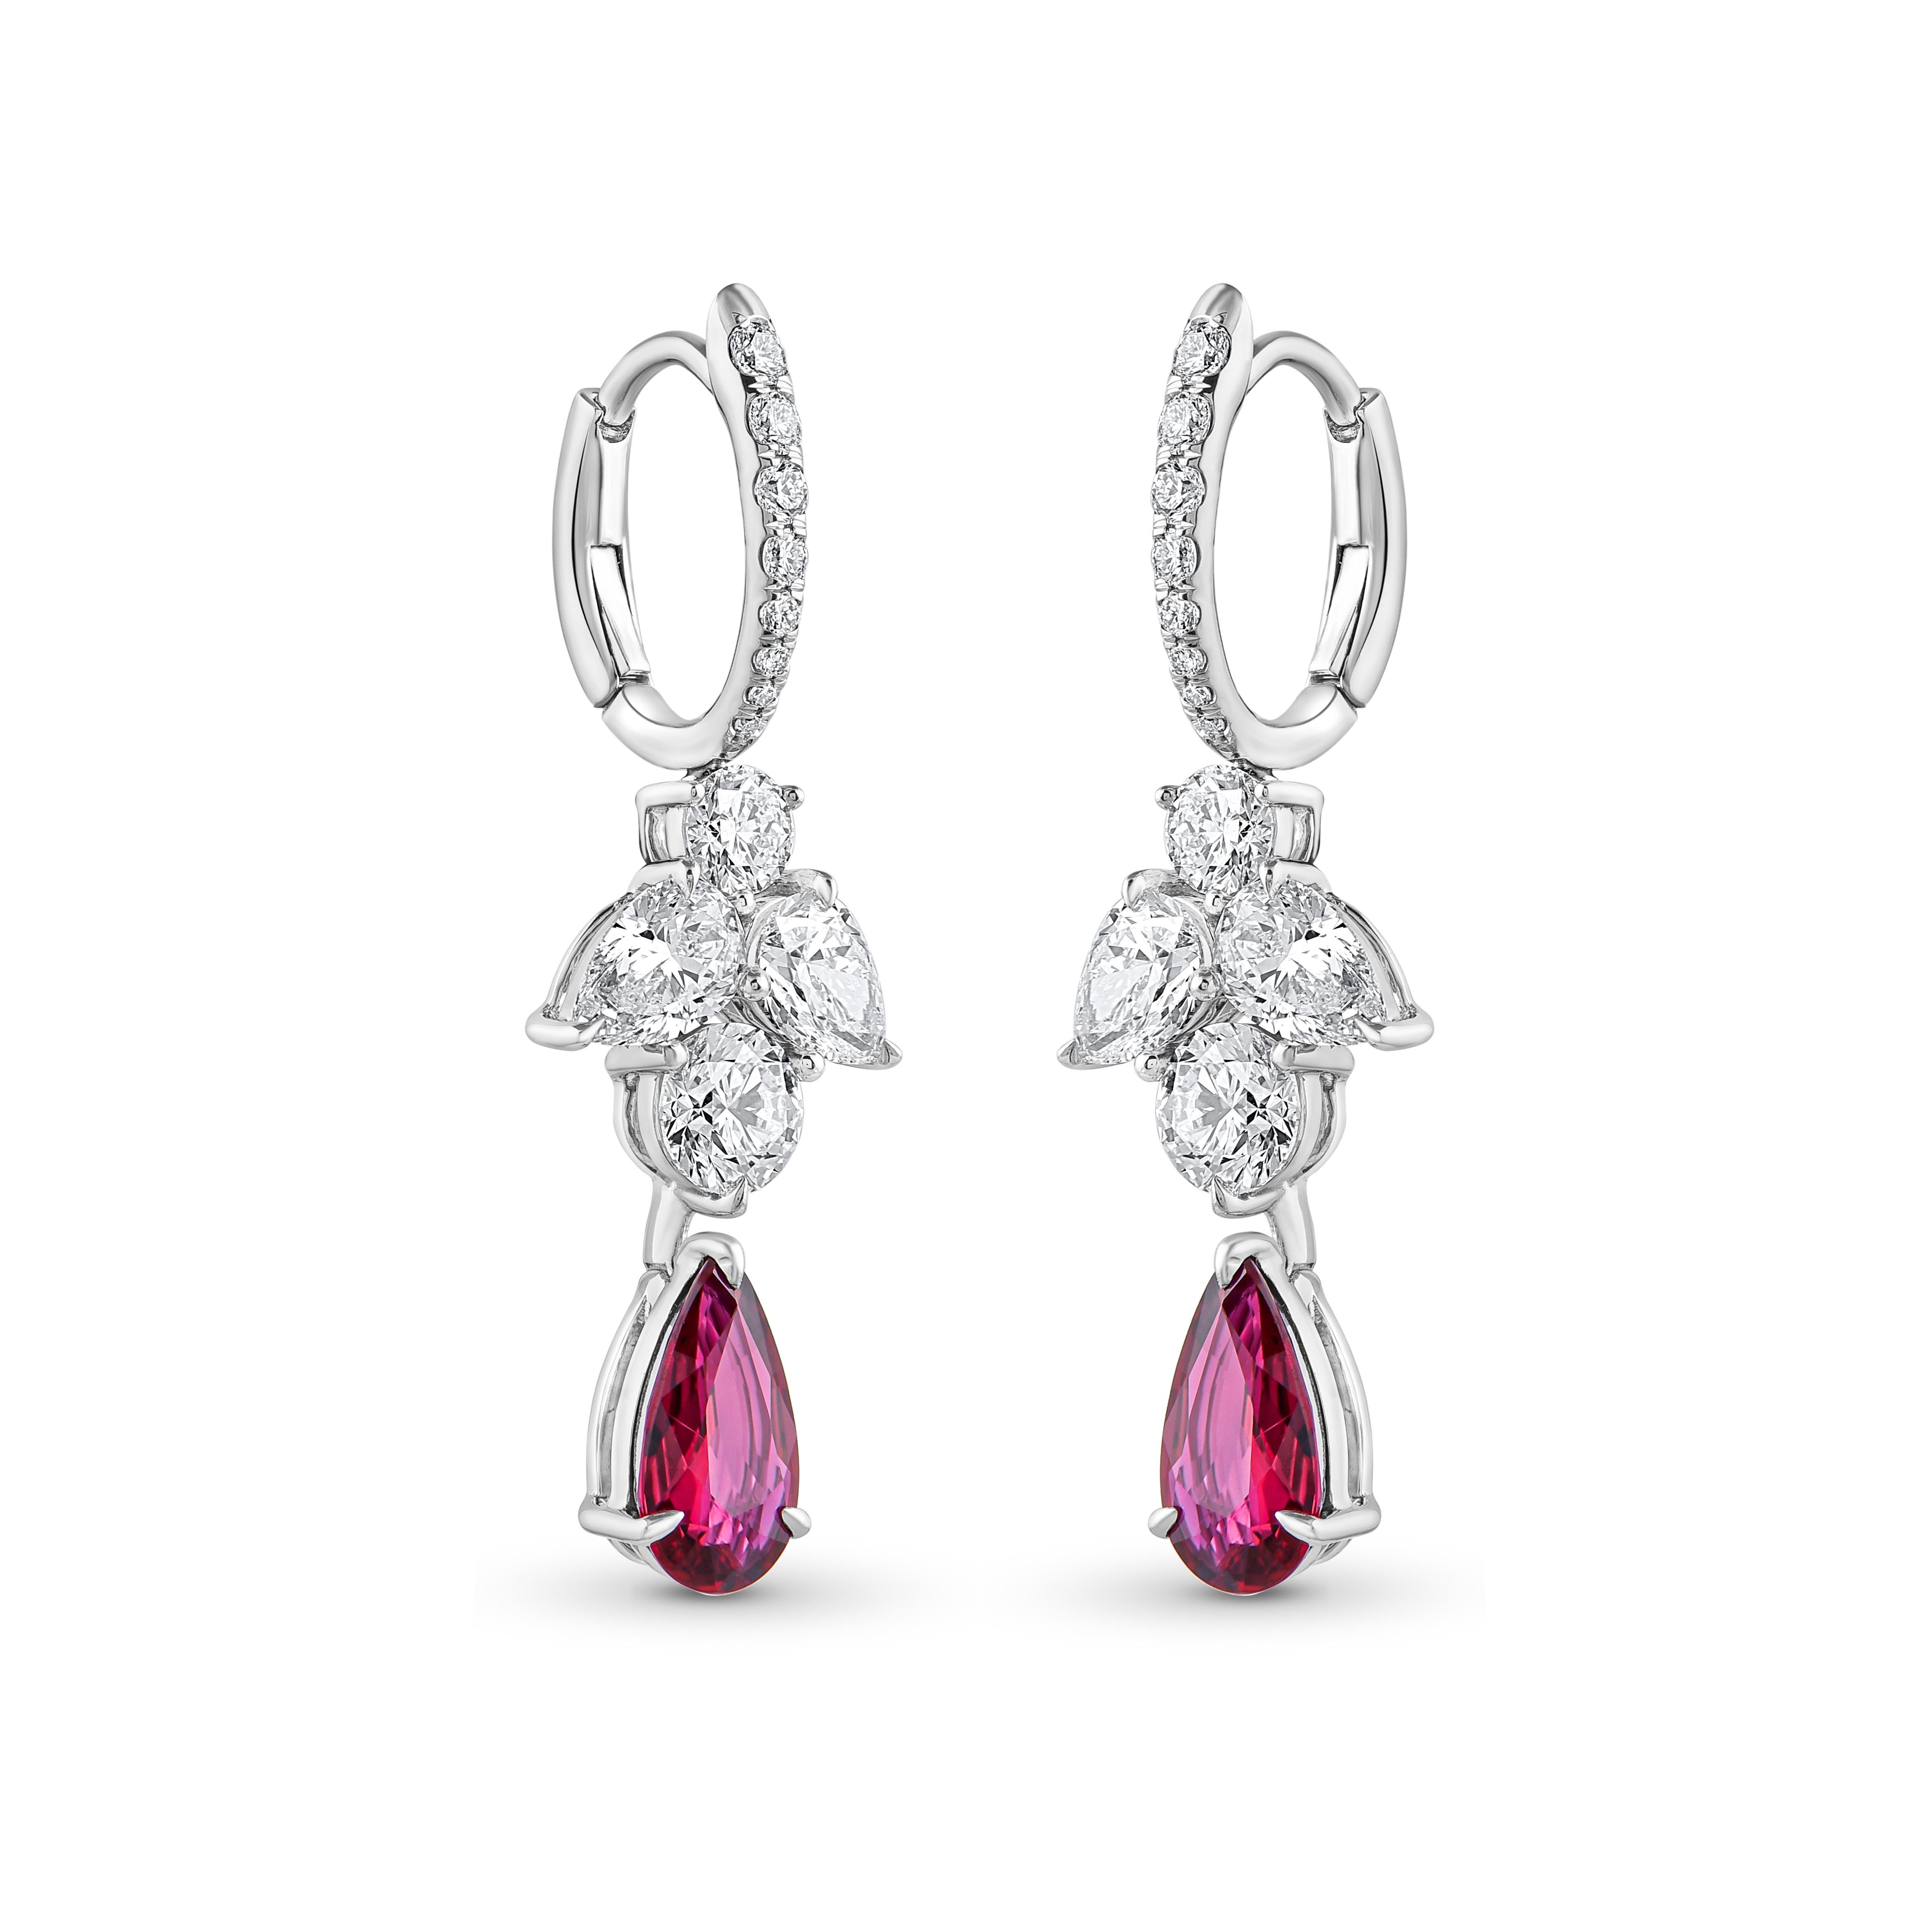 Inspiriert von der Freude, einen rauschenden Wasserfall zu erleben, sind diese exquisiten und eleganten Ohrringe aus der Collection'S Cascade mit Diamanten im Brillantschliff und Rubinen besetzt, die sanft herabtropfen.

Diese wunderschön